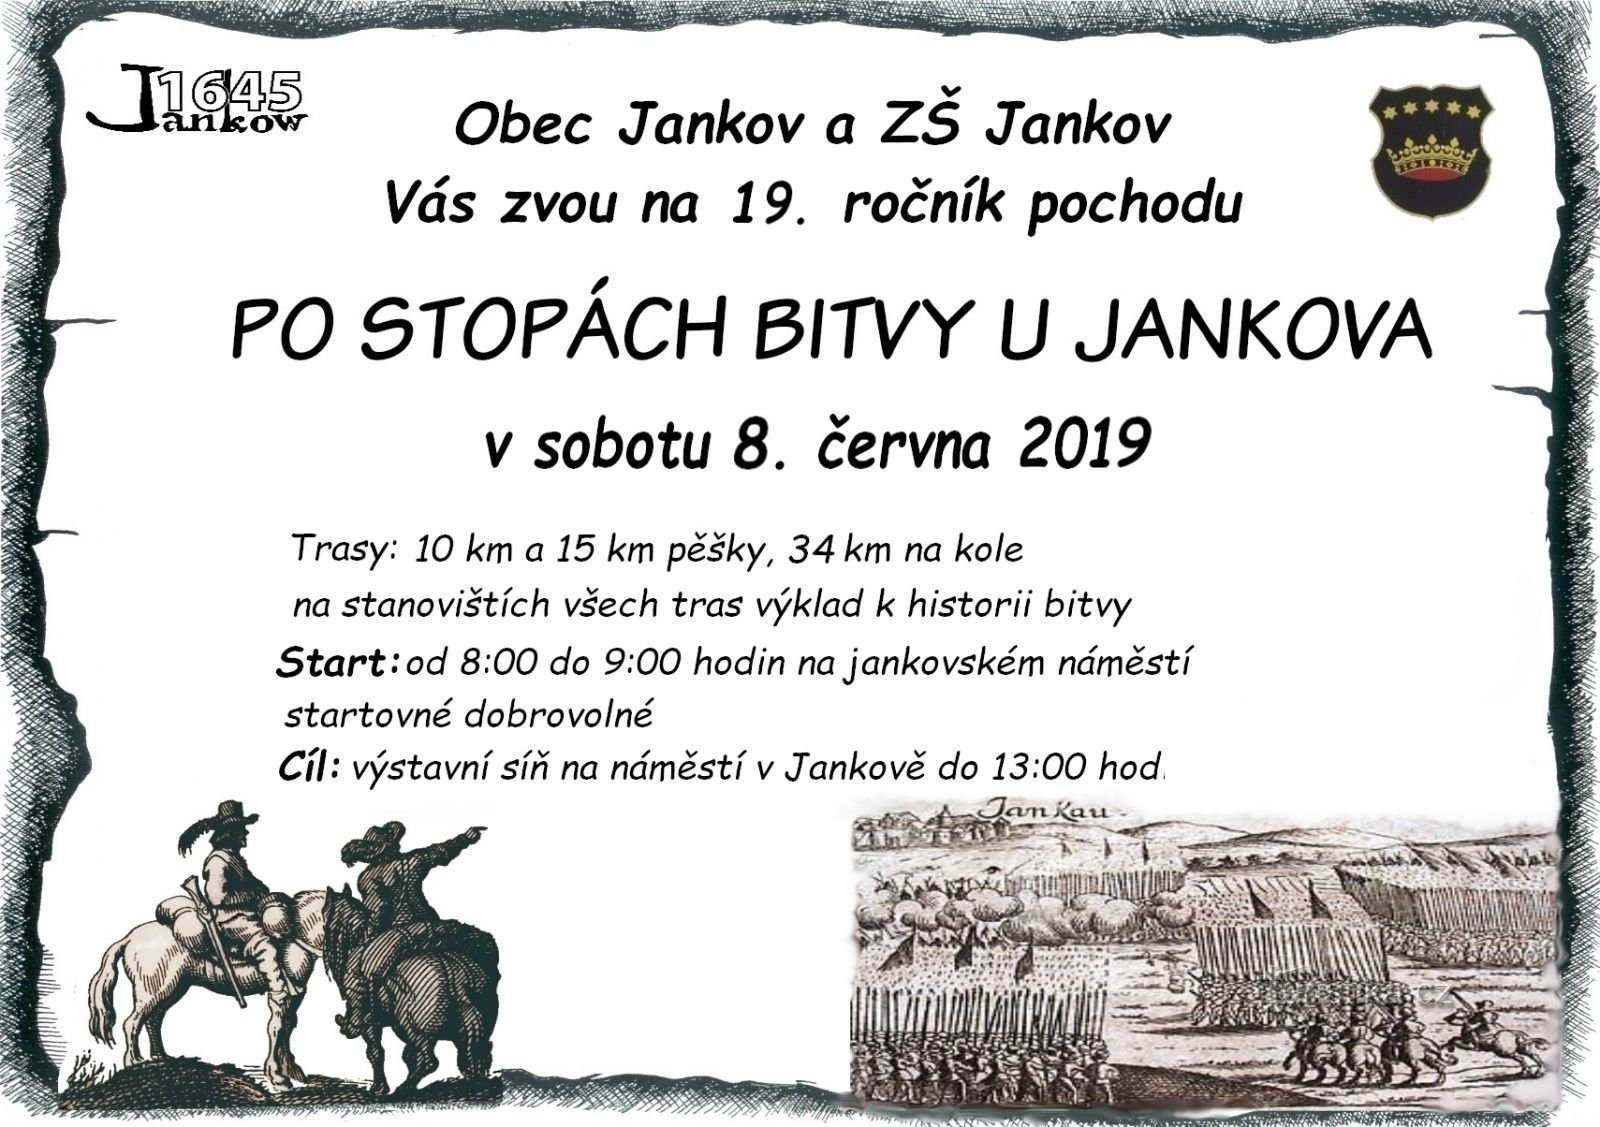 En marche Sur les traces de la bataille près de Jankovo ​​puis en Voyage vers la Préhistoire